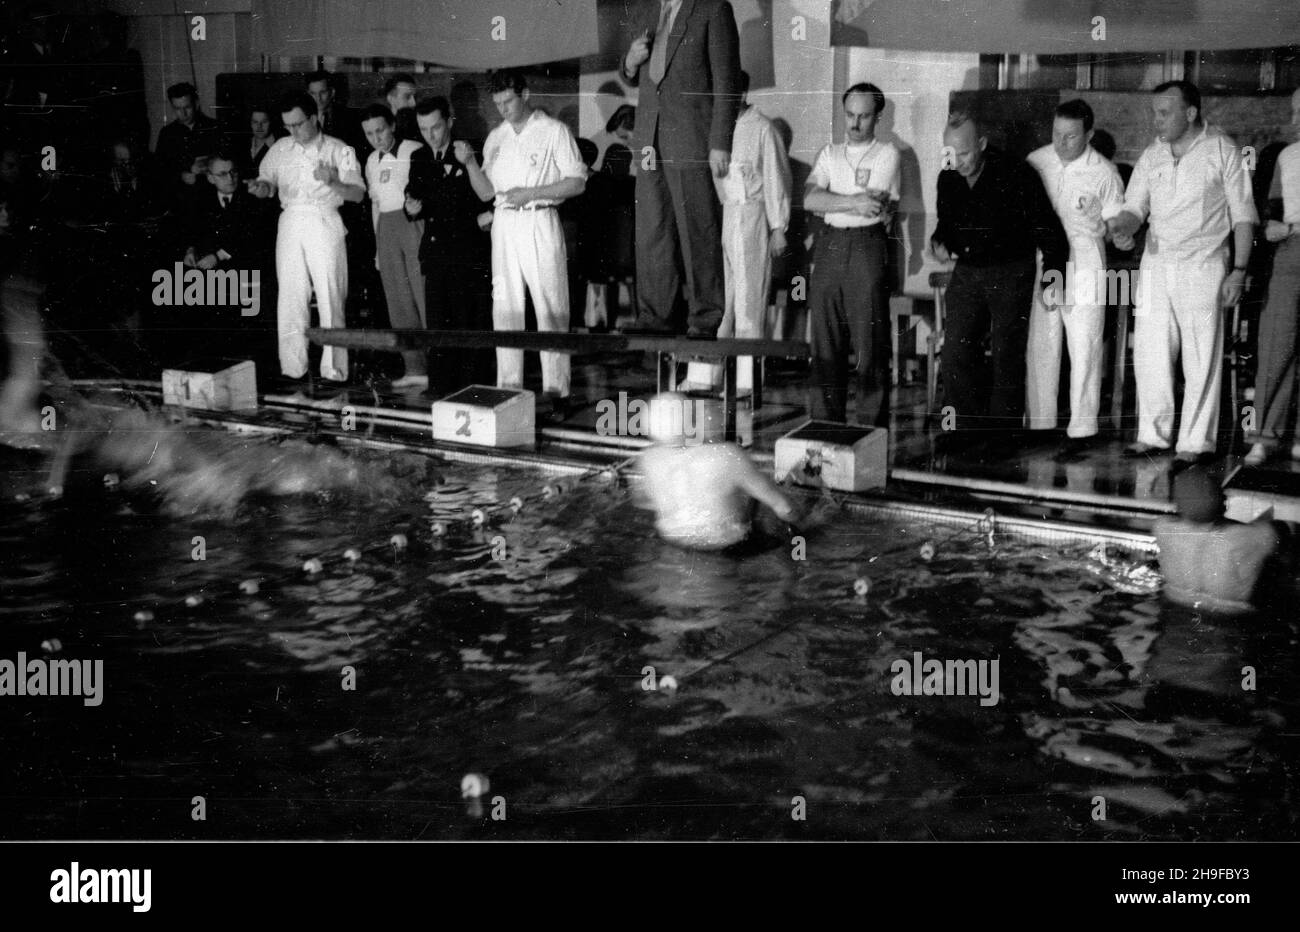 Warszawa, 1948-01-08. Basen YMCA. Pierwsze po wojnie miêdzypañstwowe zawody p³ywackie miêdzy Polsk¹ Œrodkow¹ i Czechos³owacj¹. Zawody zakoñczy³y siê zwyciêstwem goœci 74,5:33,5. bk  PAP      Warsaw, Jan. 8, 1948. The YMCA swimming pool. The first after the war international swimming championship between Central Poland and Czechoslovakia. Czechoslovakia won the championship 74.5:33.5.  bk  PAP Stock Photo